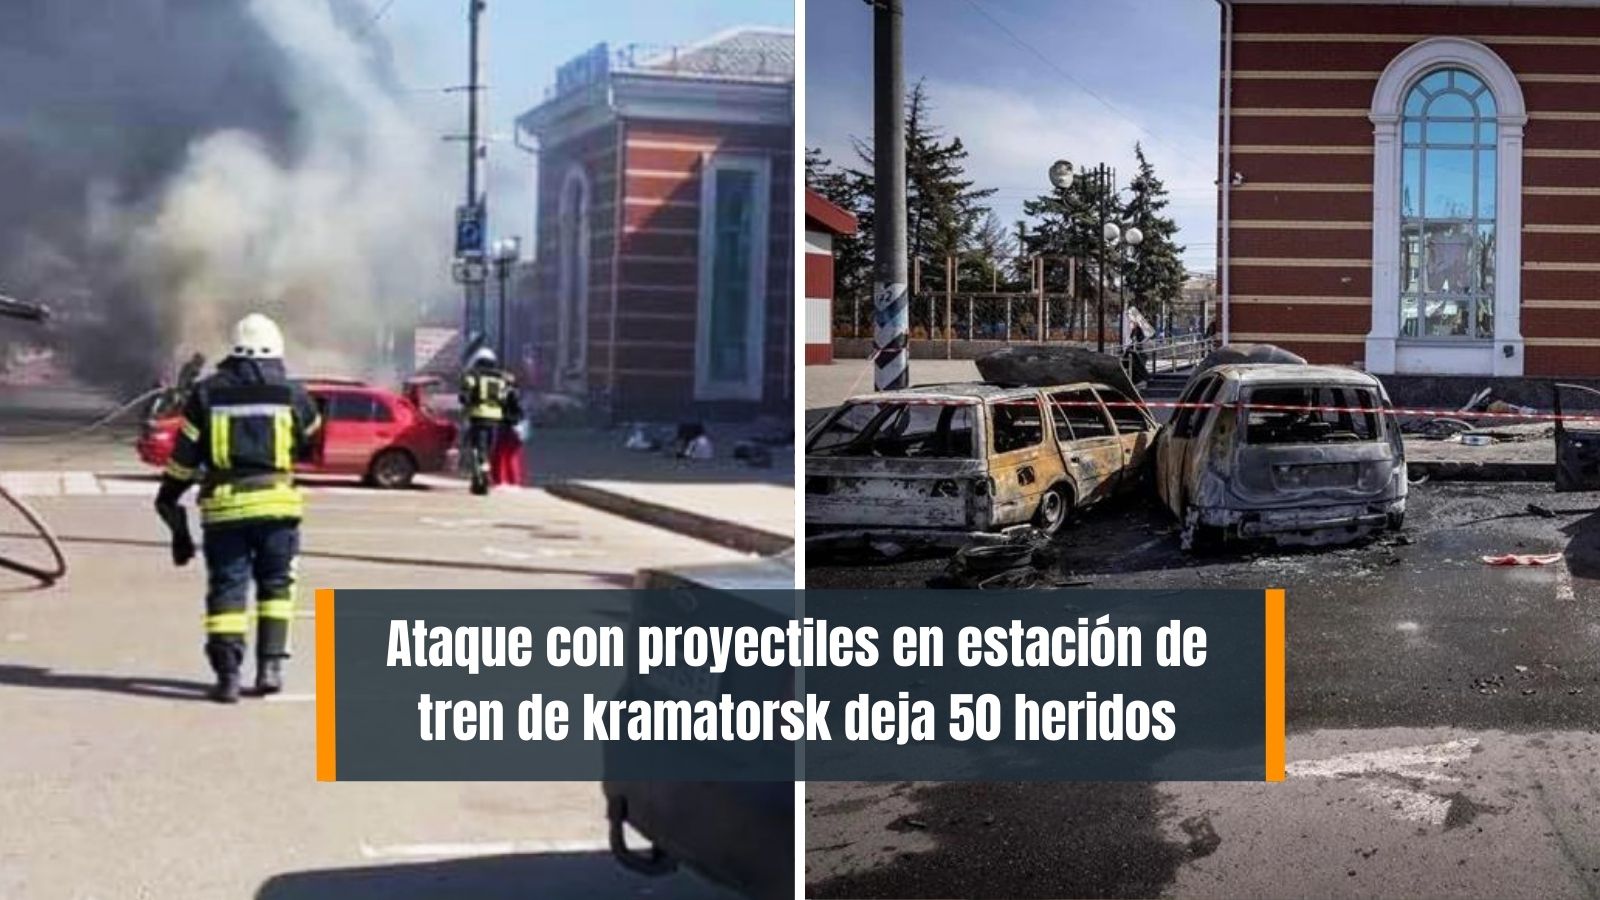 Bombardeo en Estación de trenes de kramatorsk deja 50 muertos